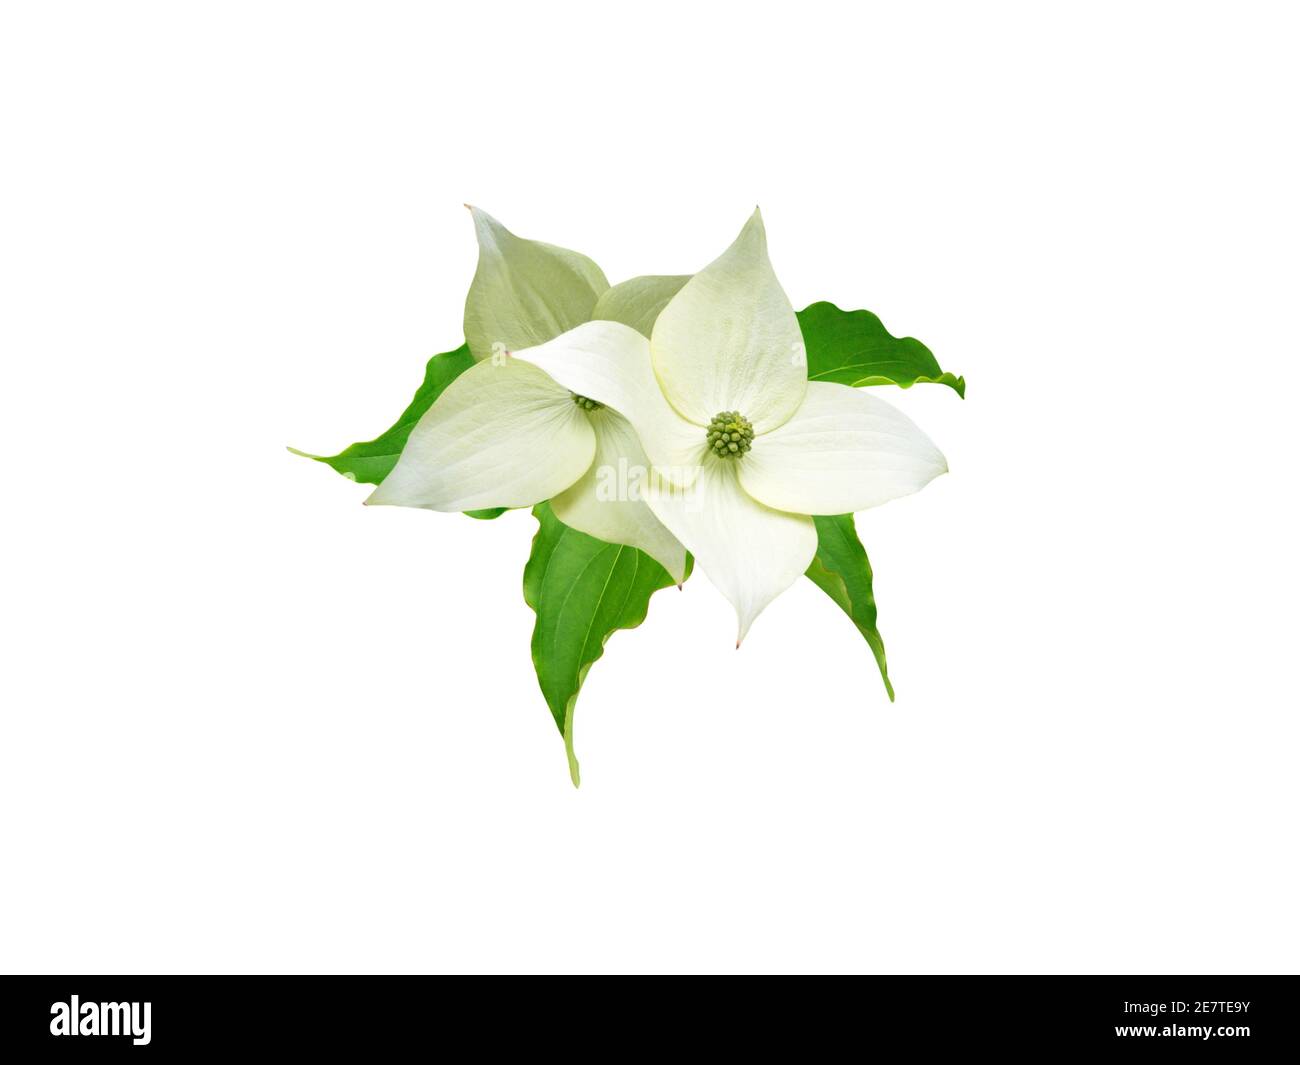 Dogwood albero verdolino bianco quattro fiori di petali e foglie isolate su bianco. Cornus kousa. Foto Stock